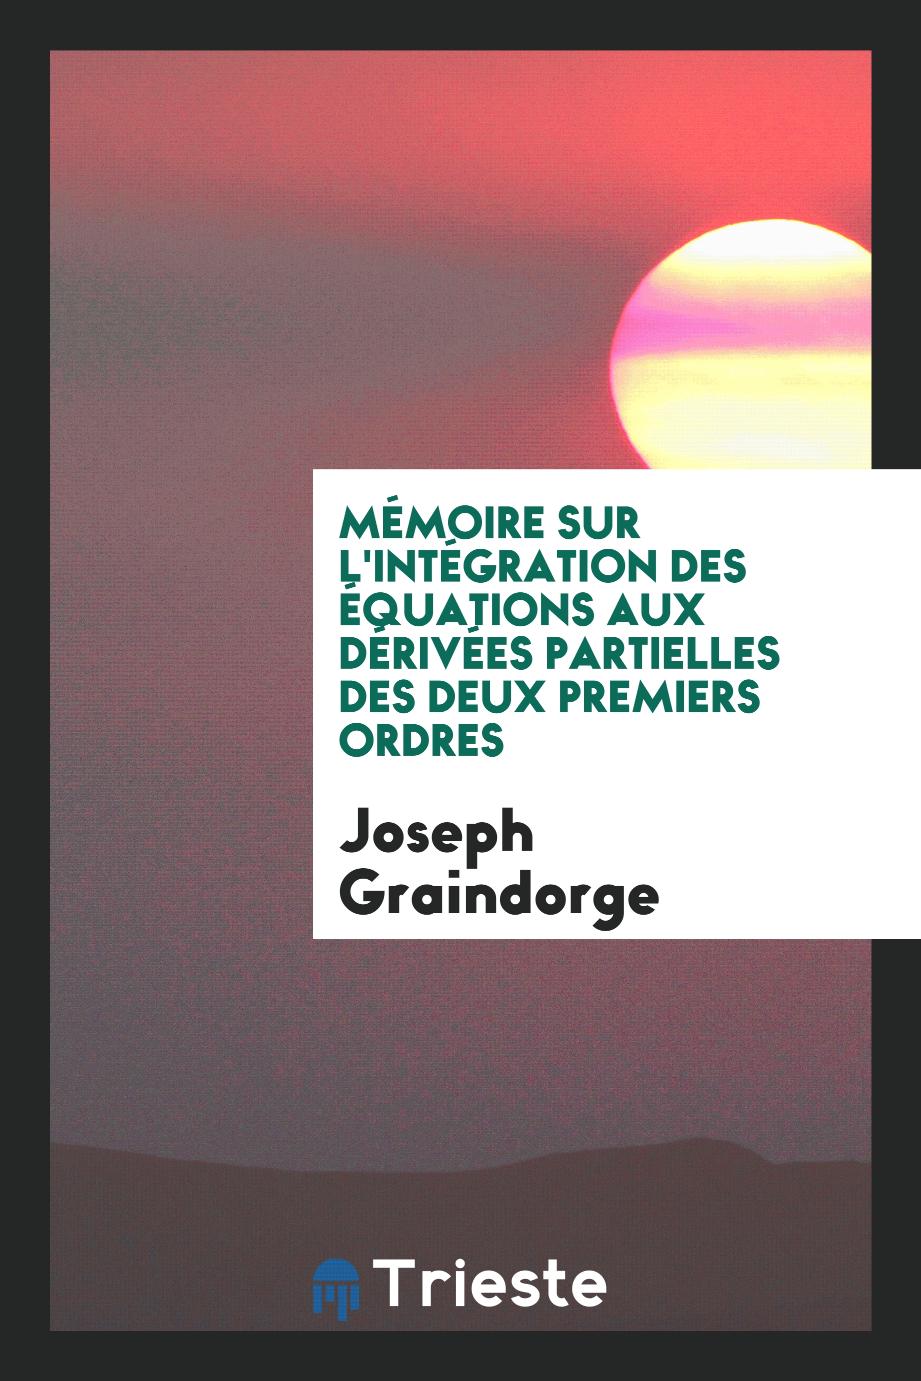 Joseph Graindorge - MéMoire Sur L'intéGration Des éQuations Aux DéRivéEs Partielles Des Deux Premiers Ordres